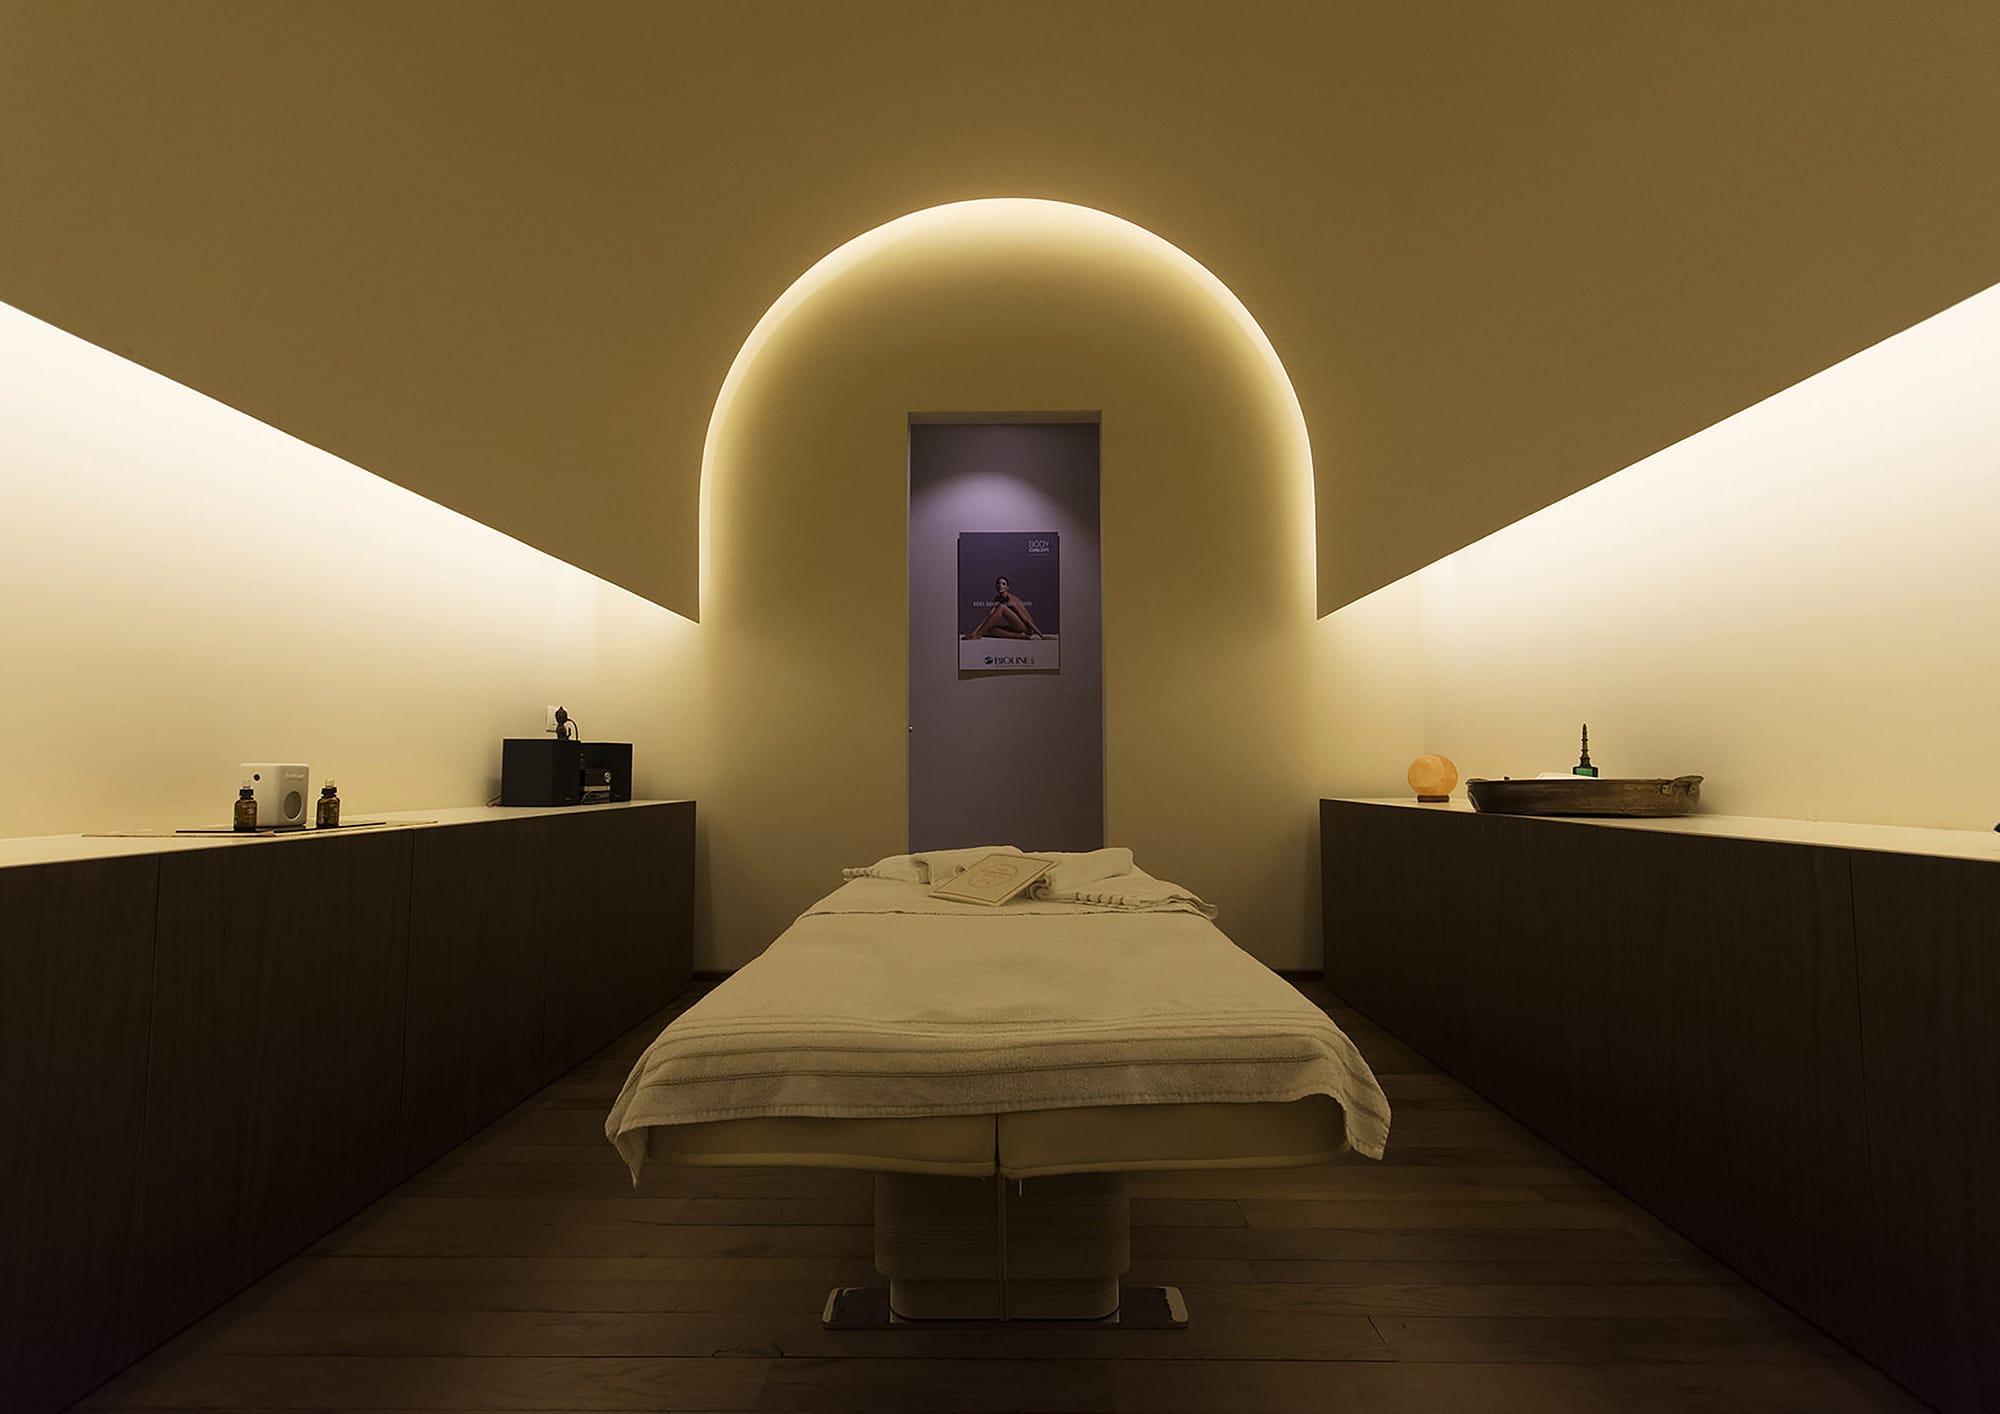 Borgo Cadonega Spa, cabina massaggi con suggestiva copertura a botte retroilluminata